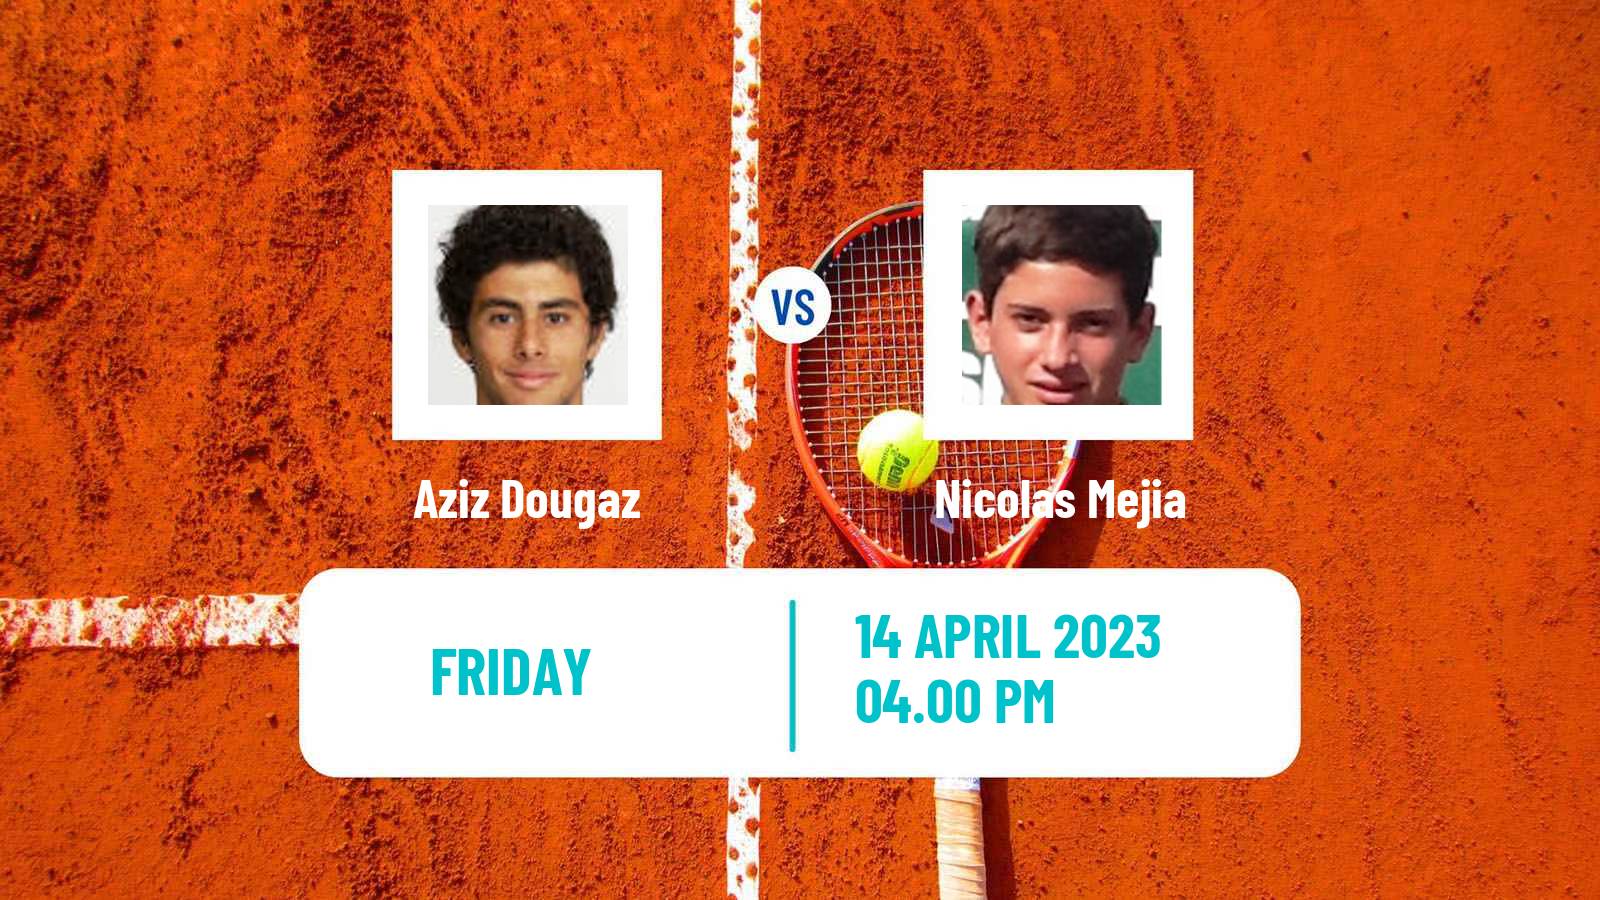 Tennis ATP Challenger Aziz Dougaz - Nicolas Mejia